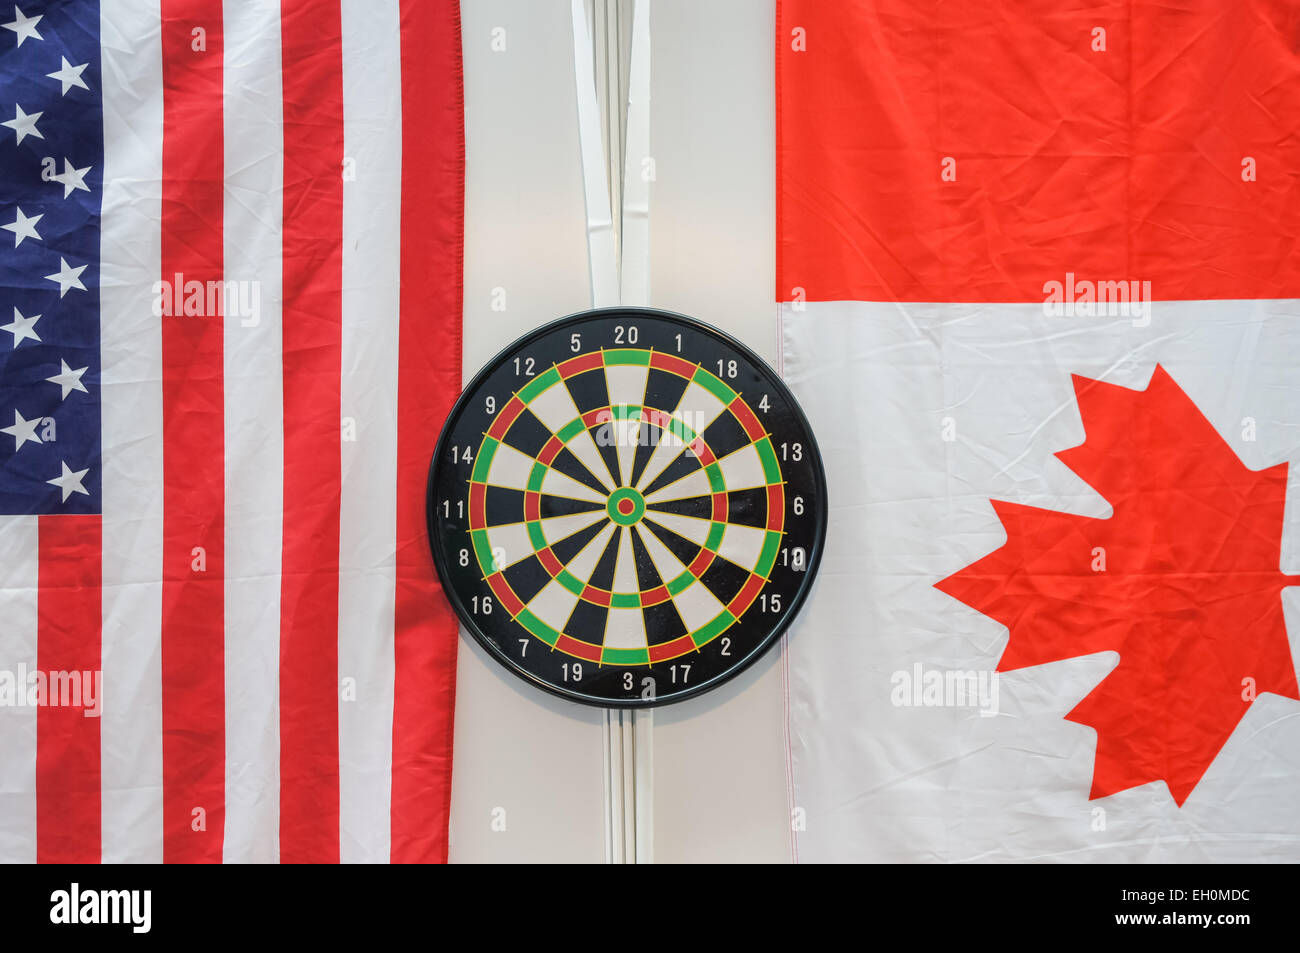 Dartscheibe mit kanadischen und amerikanischen Flagge Flagge Stockfoto